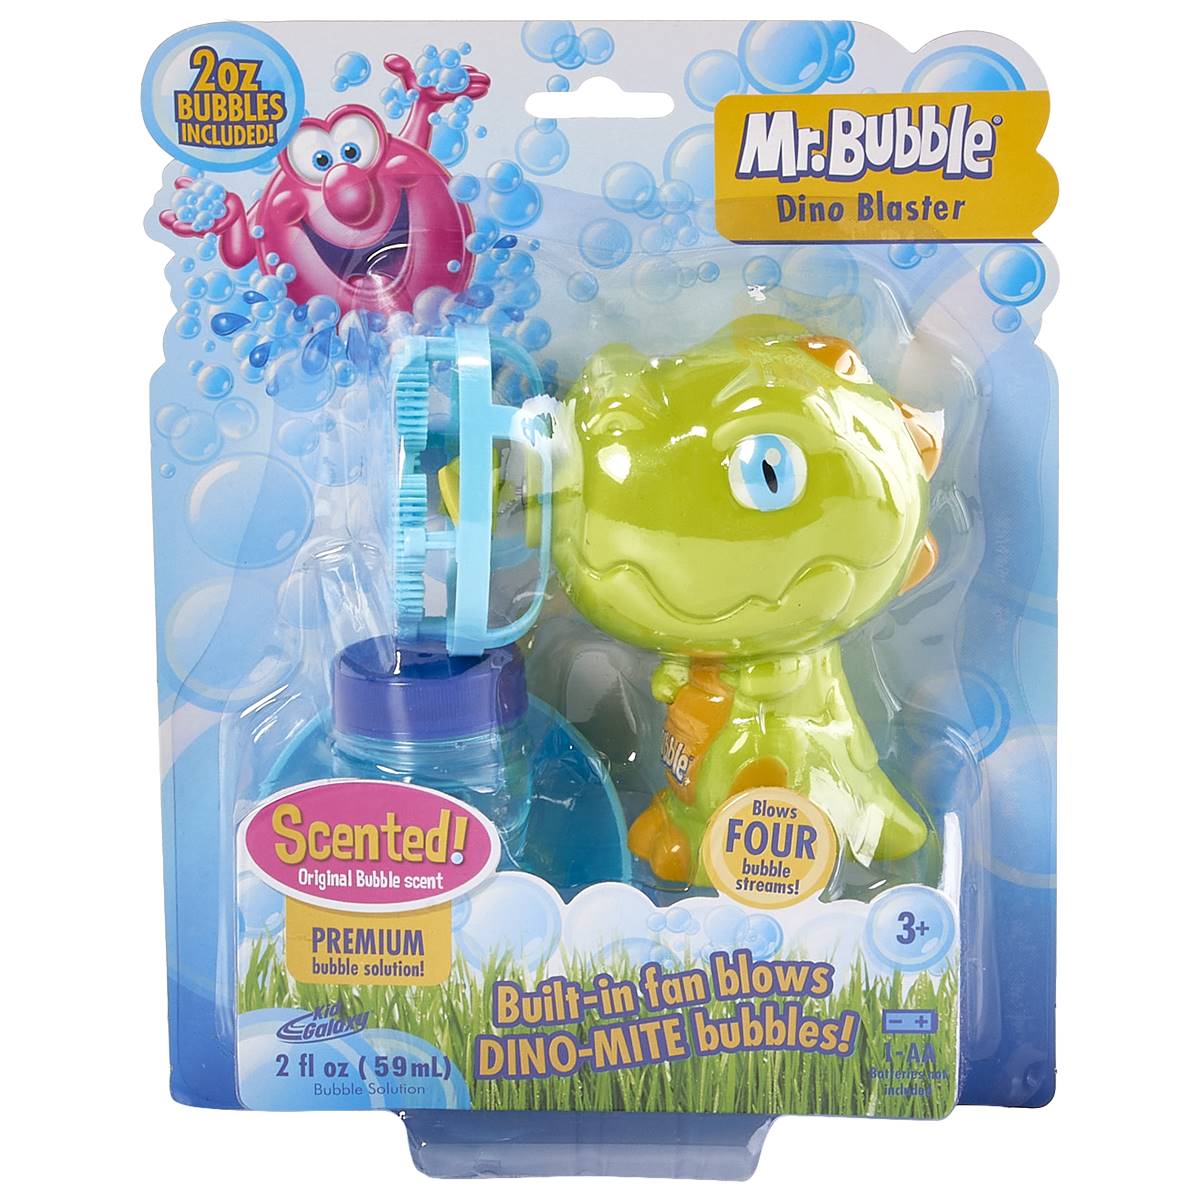 Mr. Bubble Dino Blaster